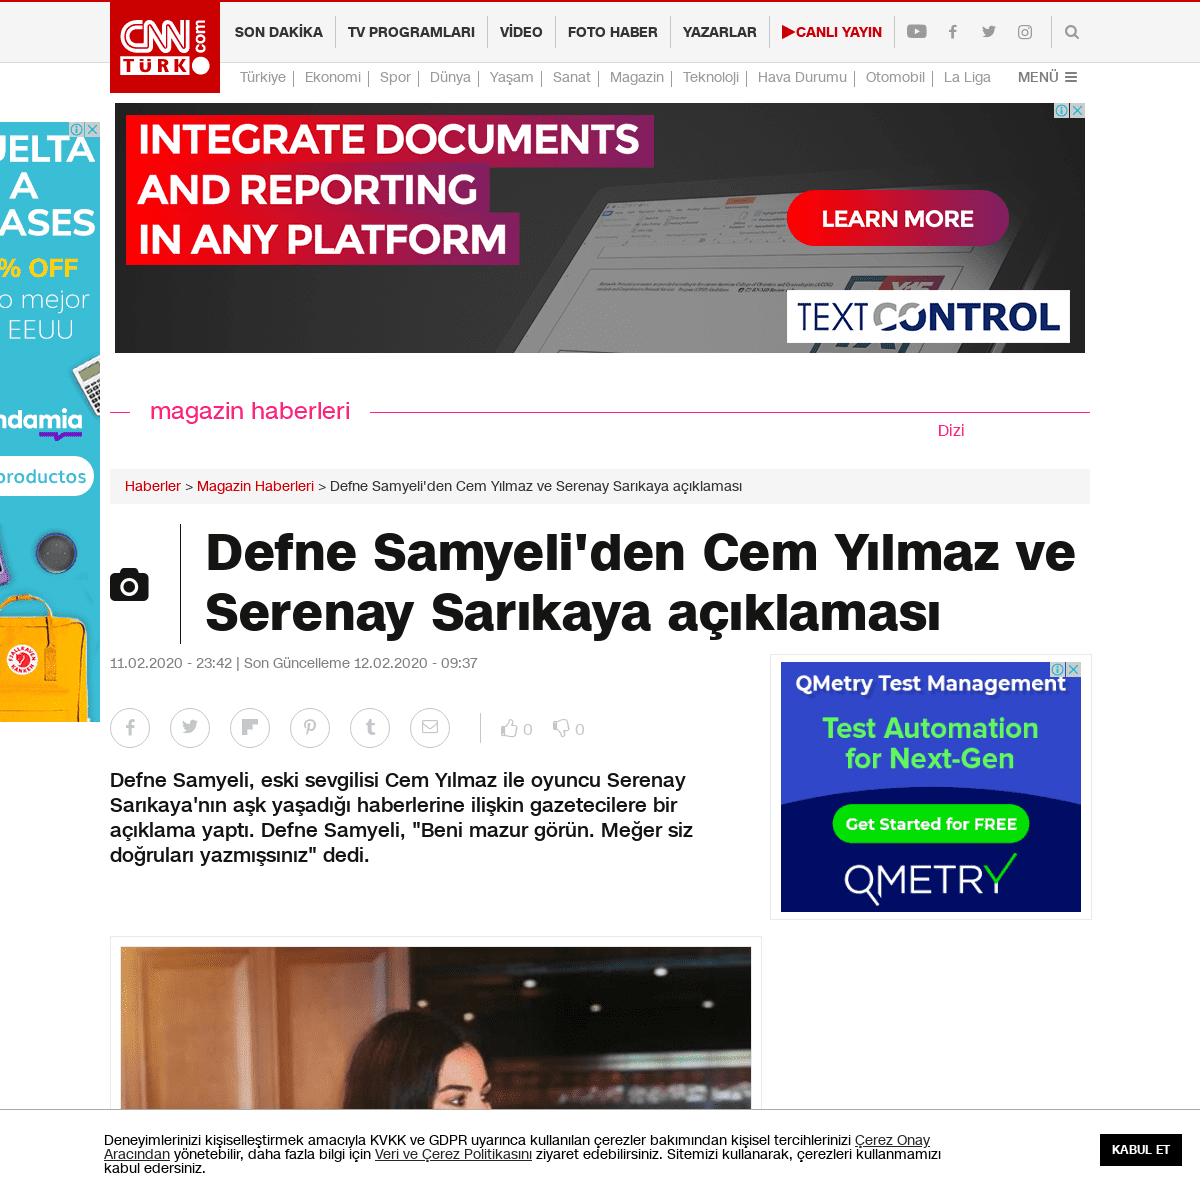 A complete backup of www.cnnturk.com/magazin/defne-samyeliden-cem-yilmaz-ve-serenay-sarikaya-aciklamasi